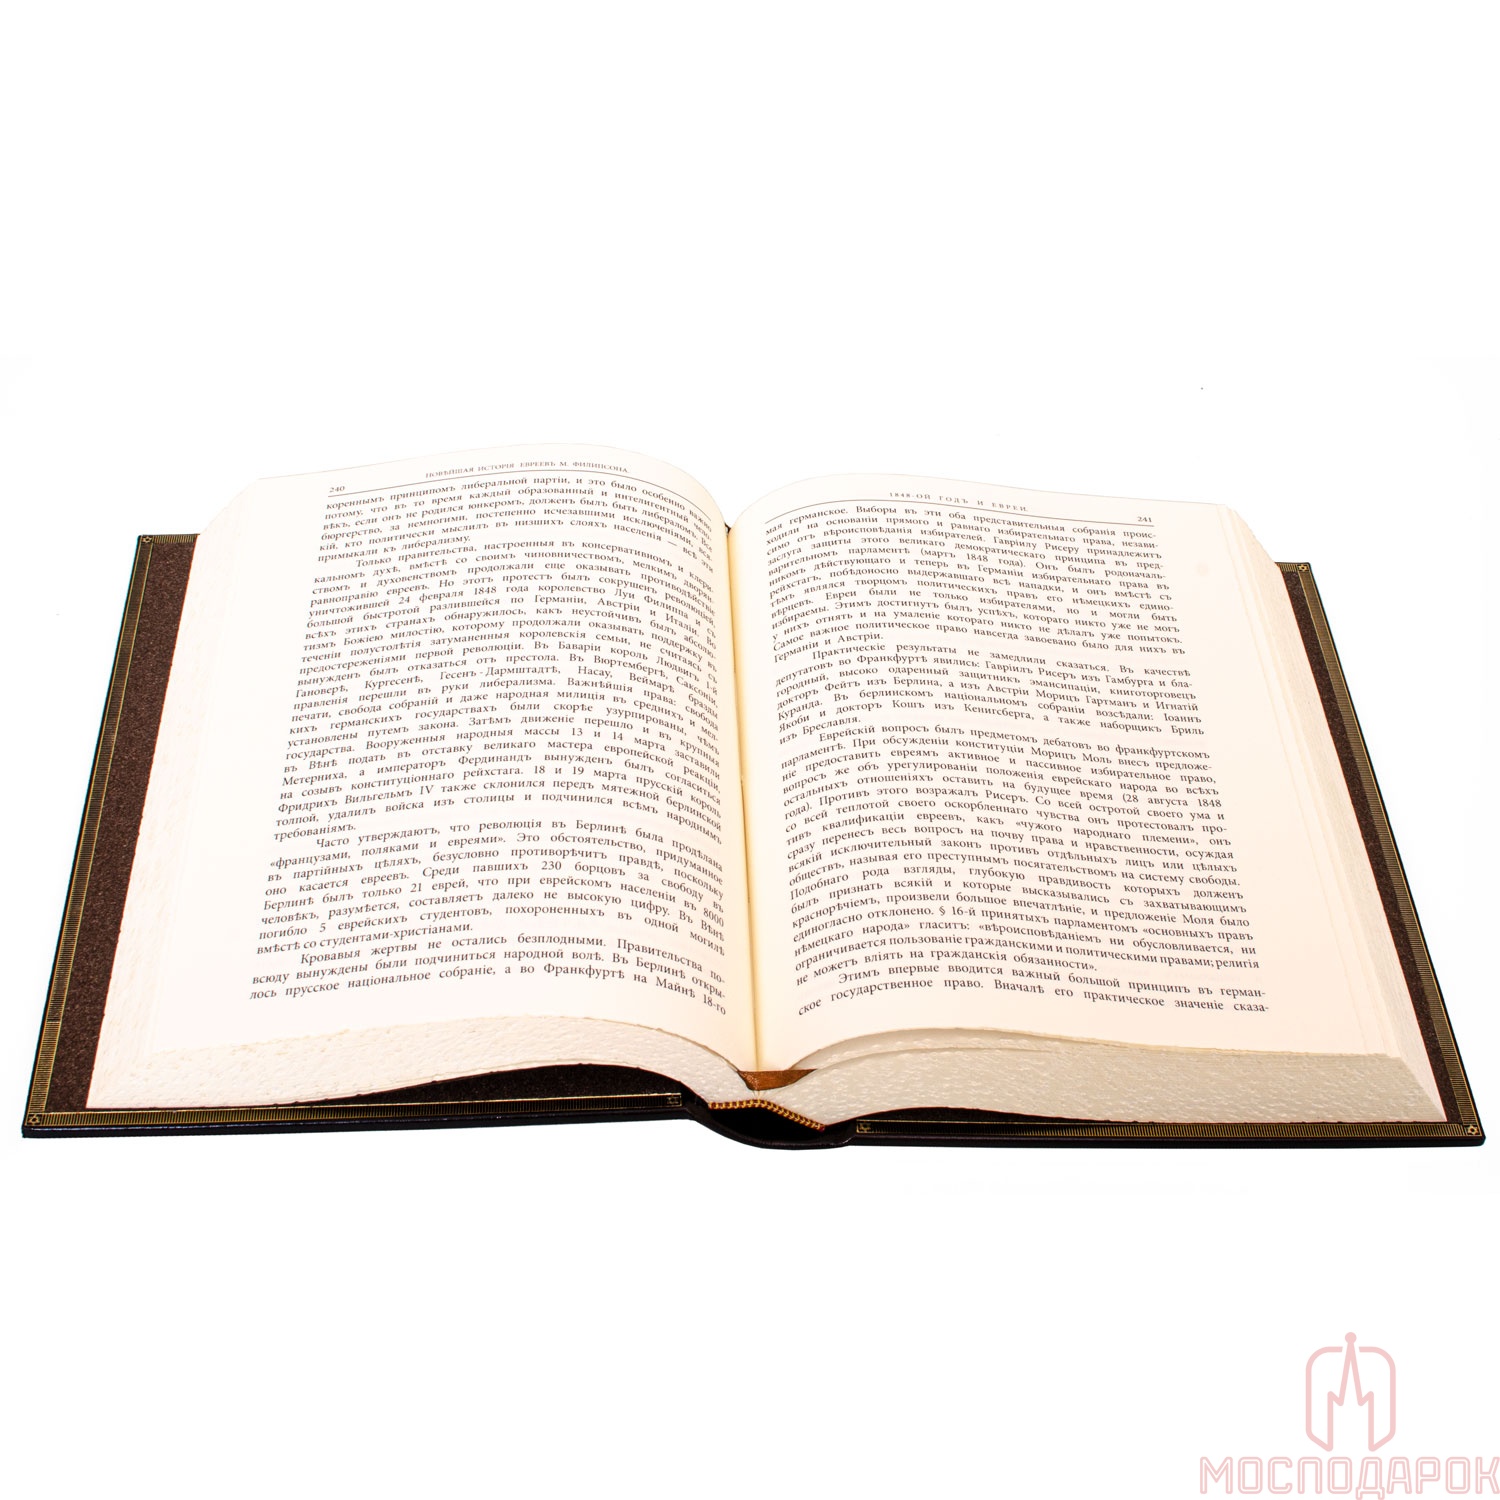 Подарочная книга "Новейшая история Еврейского народа" - артикул: 205911 | Мосподарок 